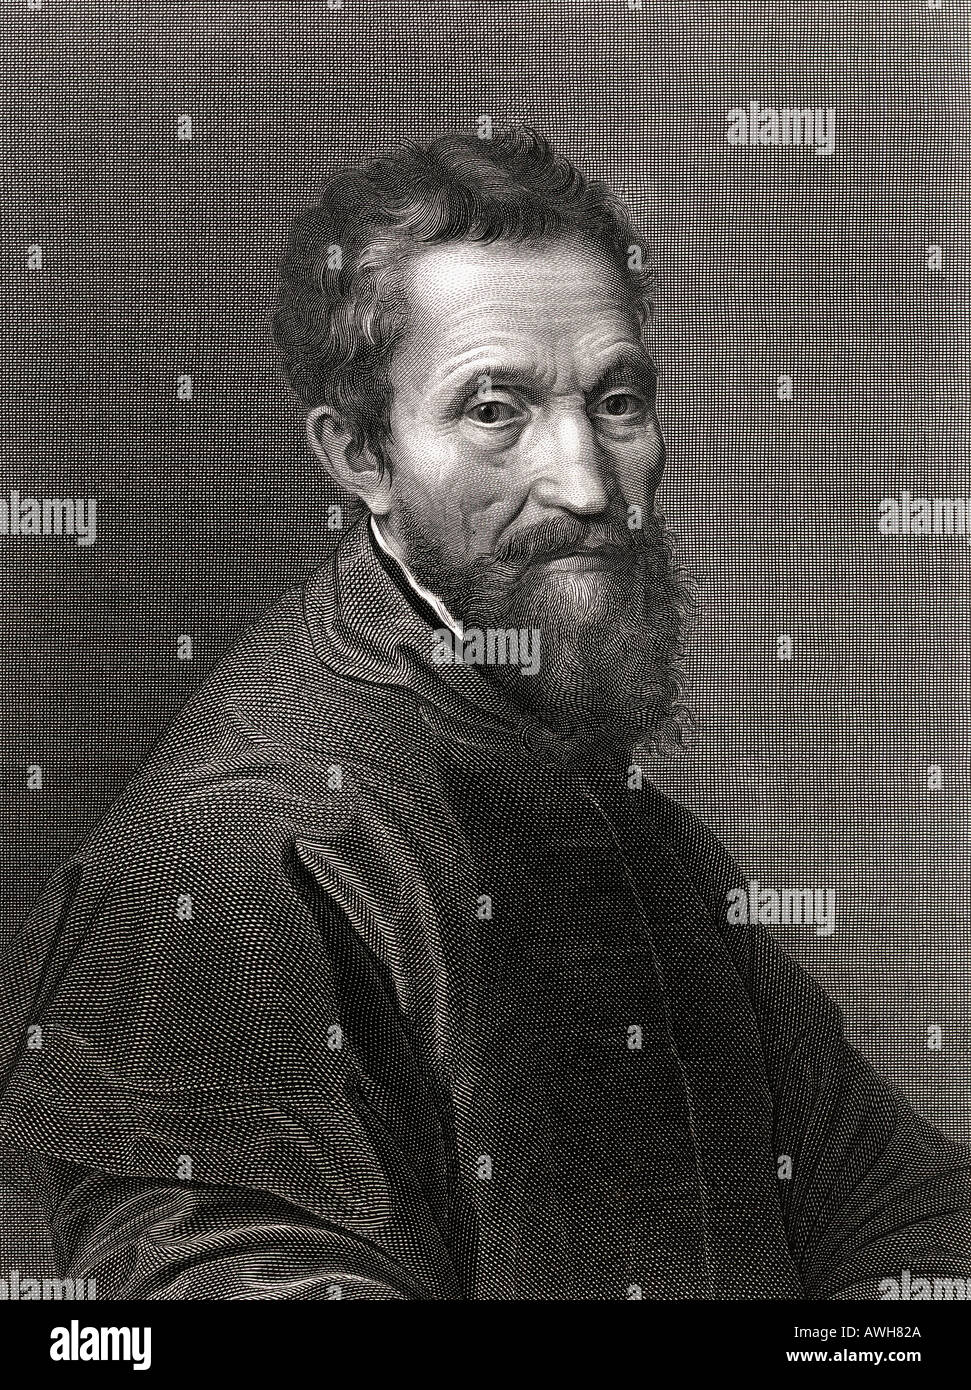 Michelangelo di Lodovico Buonarroti Simoni, 1475 - 1564. Italienischen Hochrenaissance Maler, Bildhauer, Architekt und Dichter. Stockfoto